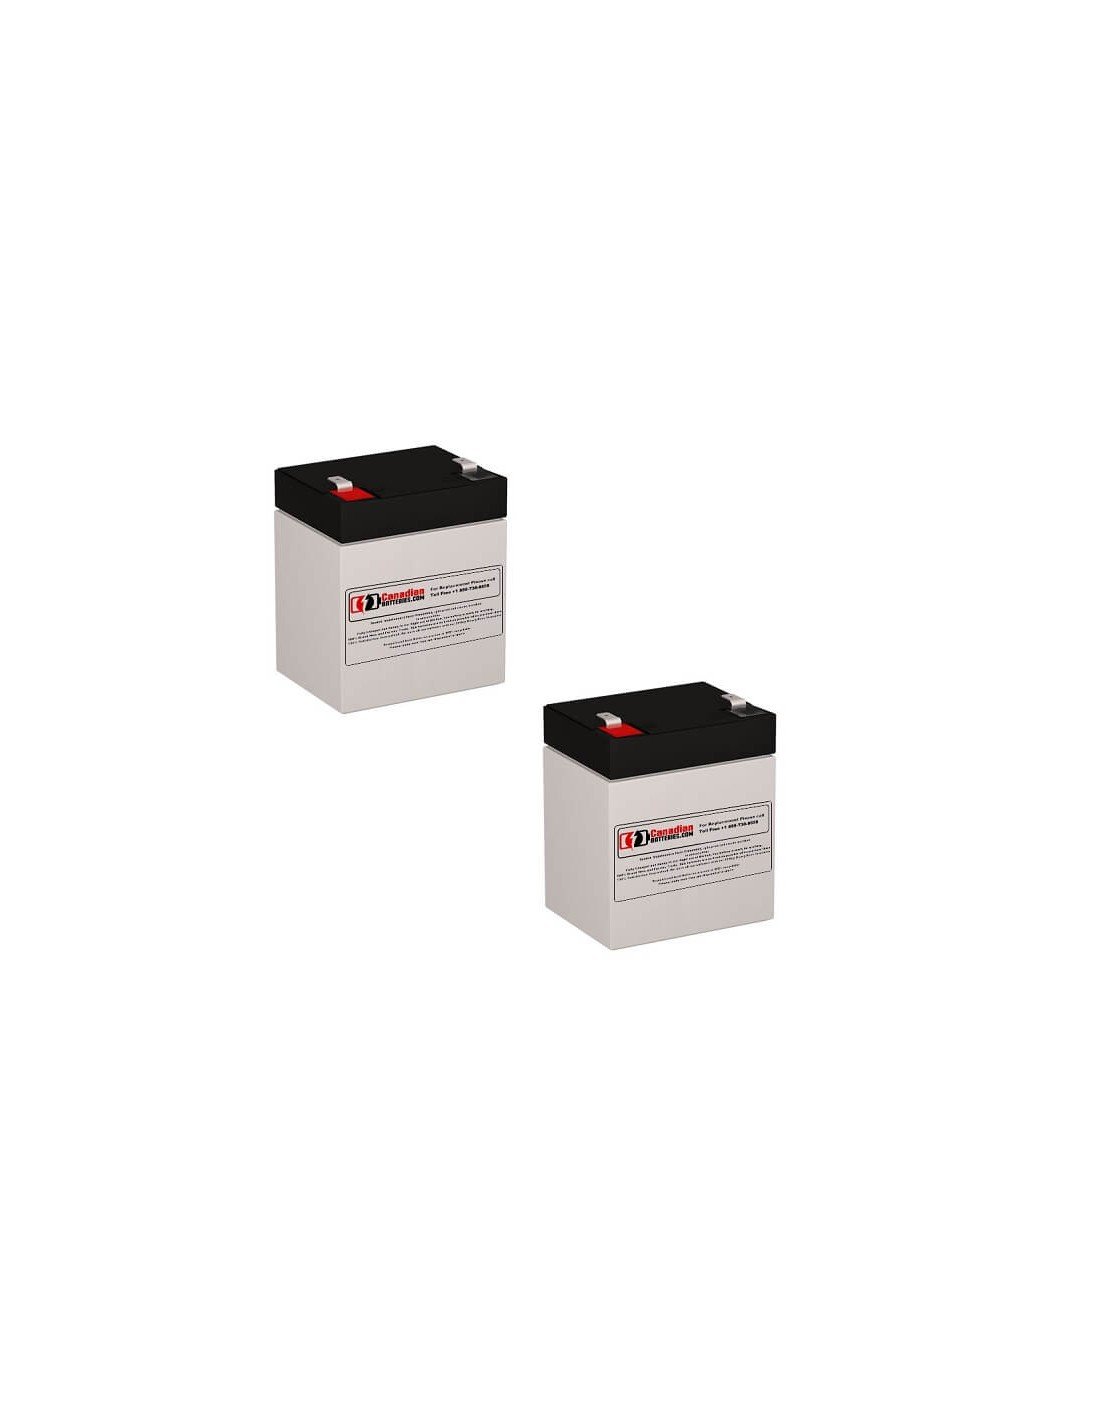 Batteries for Belkin F6c1250-tw-rk UPS, 2 x 12V, 5Ah - 60Wh